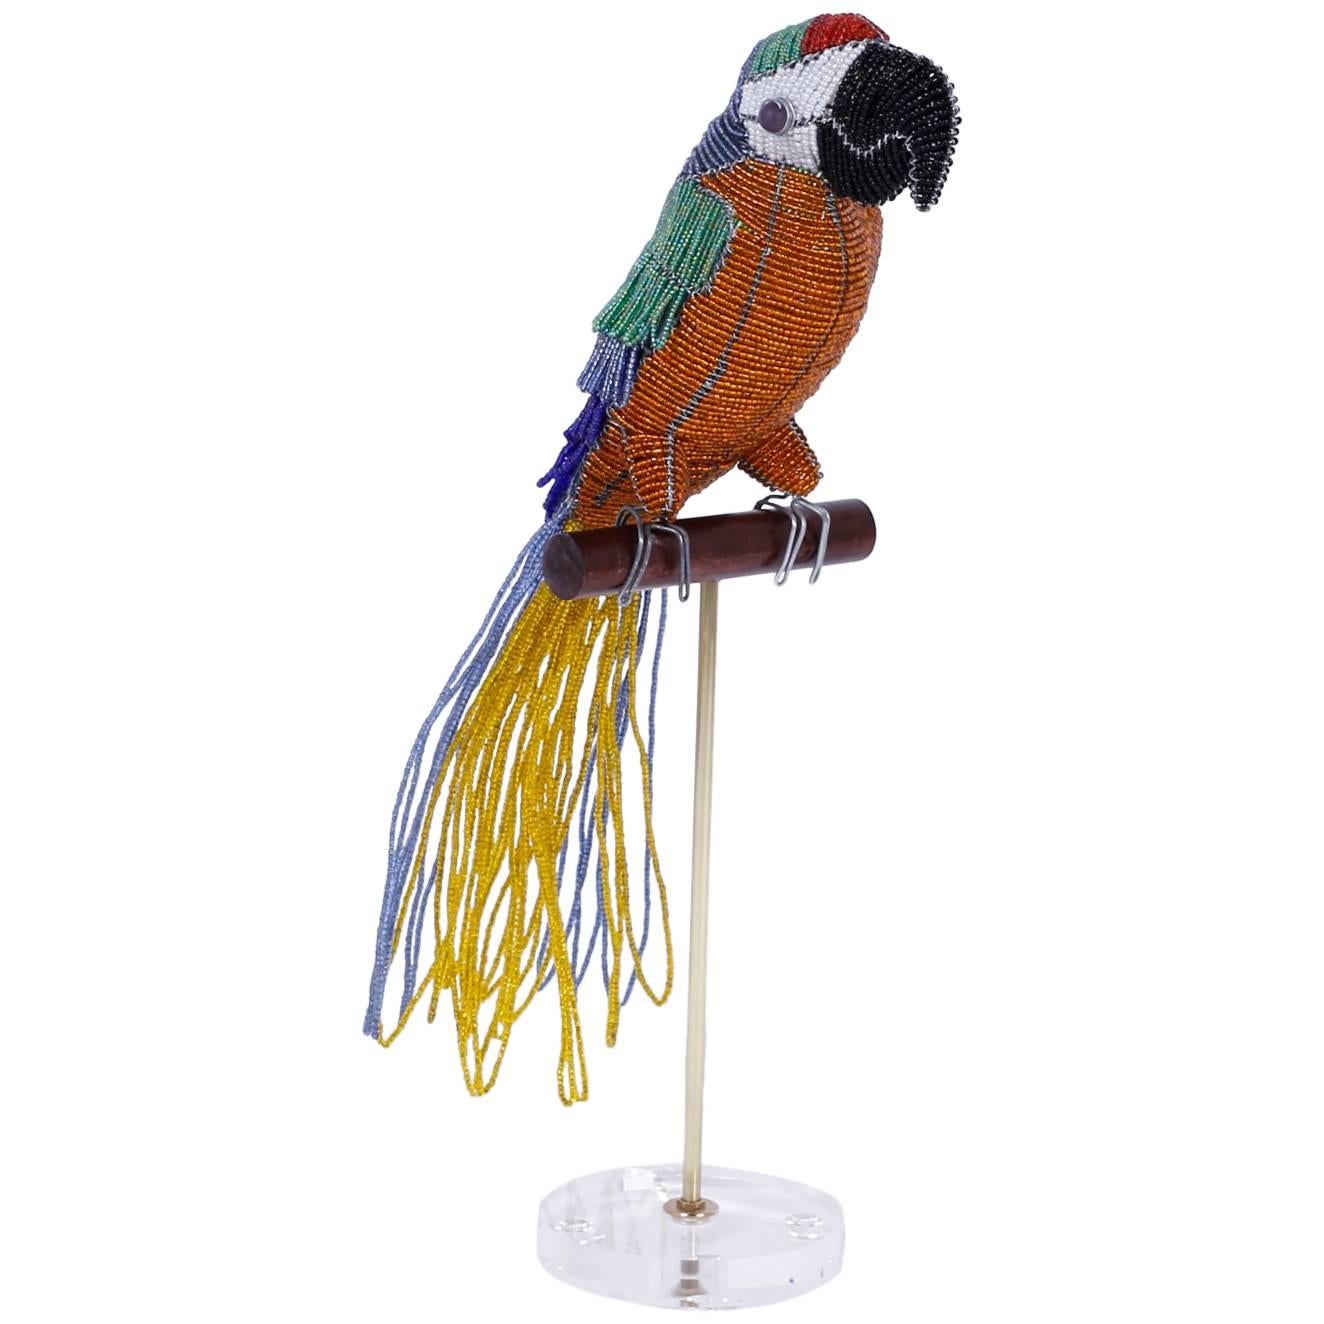 Perlenbesetzte Papagei-Skulptur aus Glas